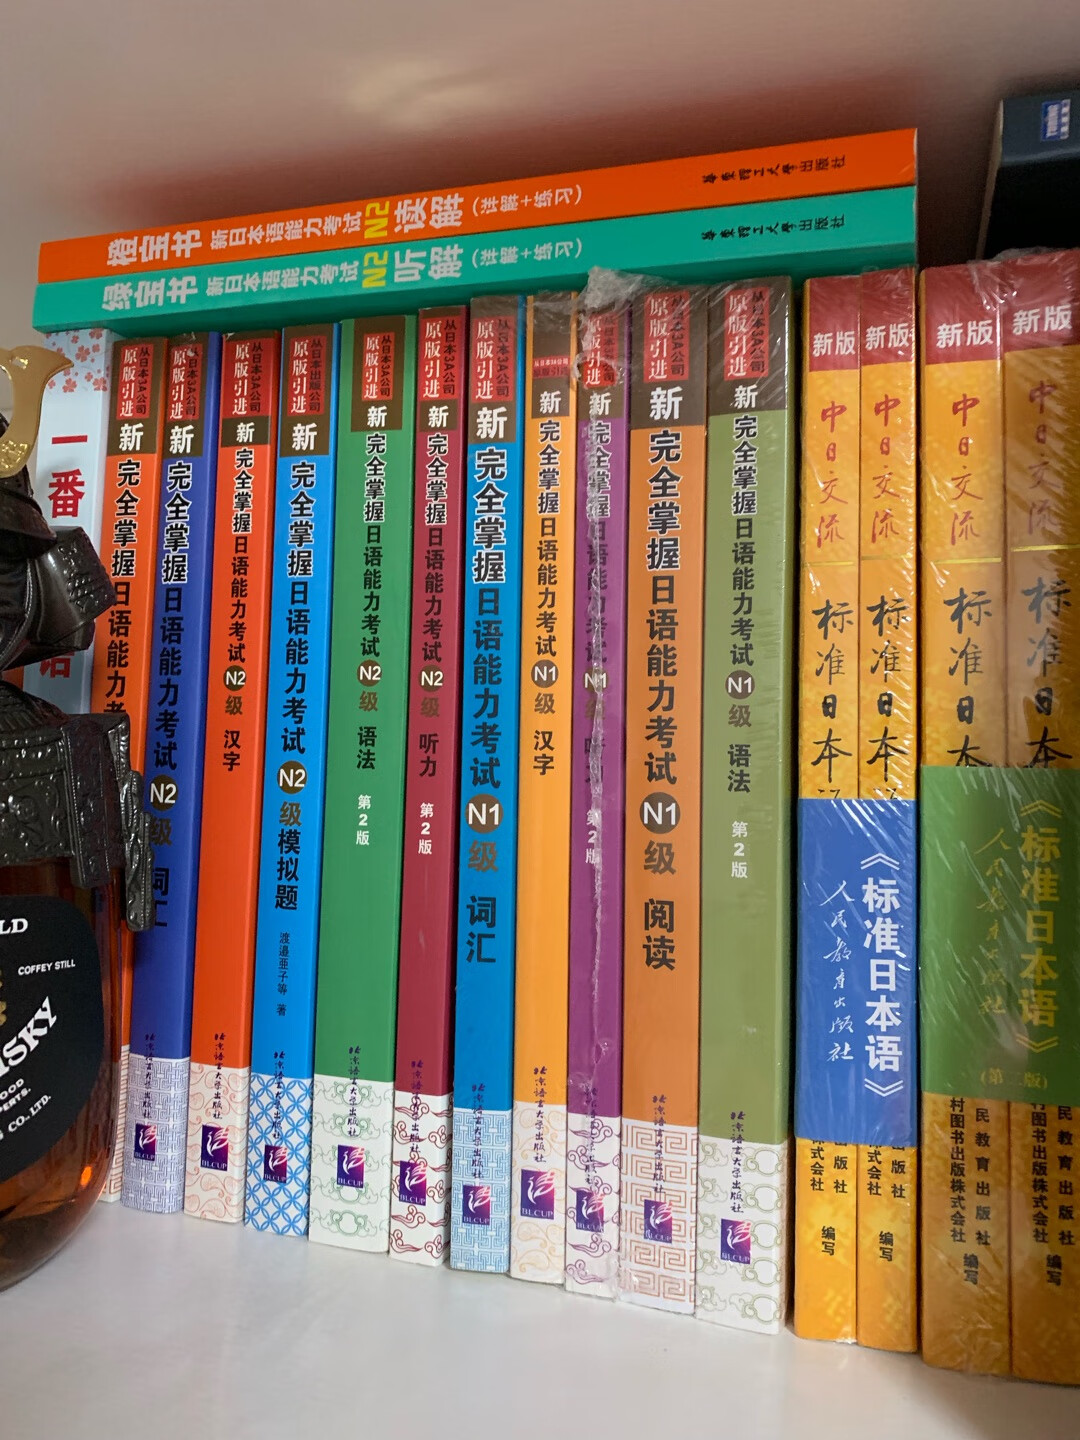 日语书已备齐，等待开始学习。学习是枯燥的，还好比较感兴趣，没有太大压力